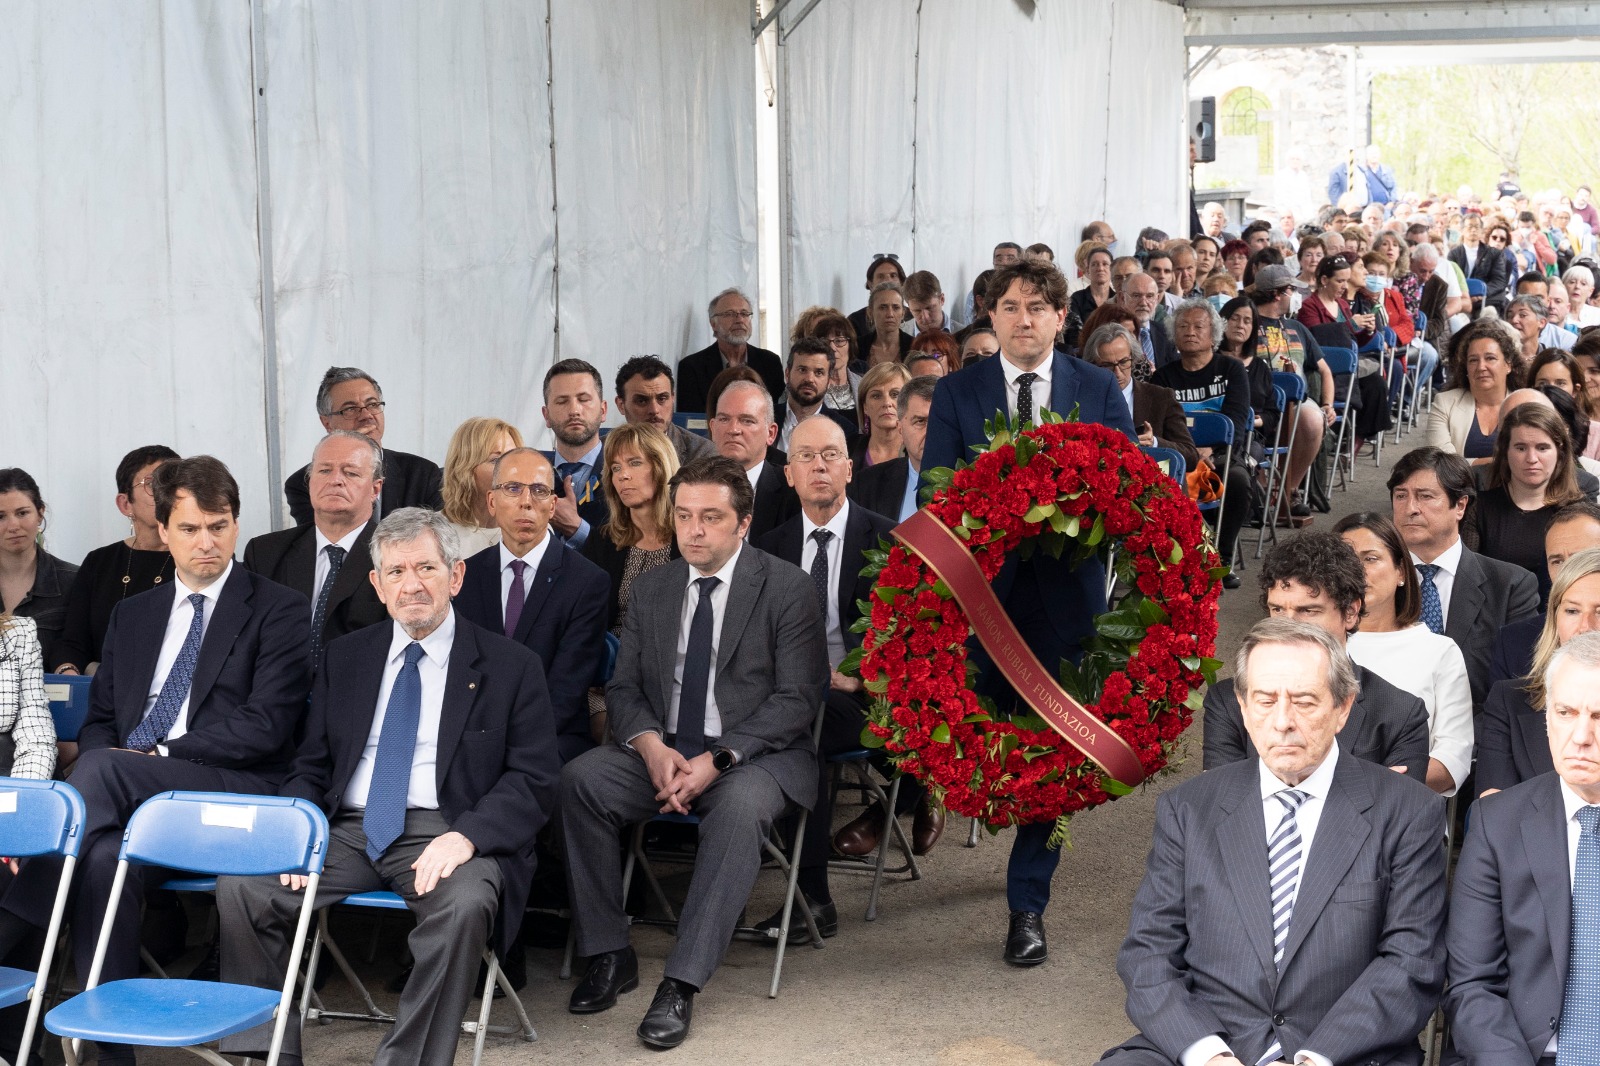 El Secretario General del PSE-EE, Eneko Andueza, participa en la ofenda floral en memoria de las víctimas y superivivientes del bombardeo de Gernika el 26 de abril de 1937 por los aviones de los fascistas | Foto: Socialistas Vascos.